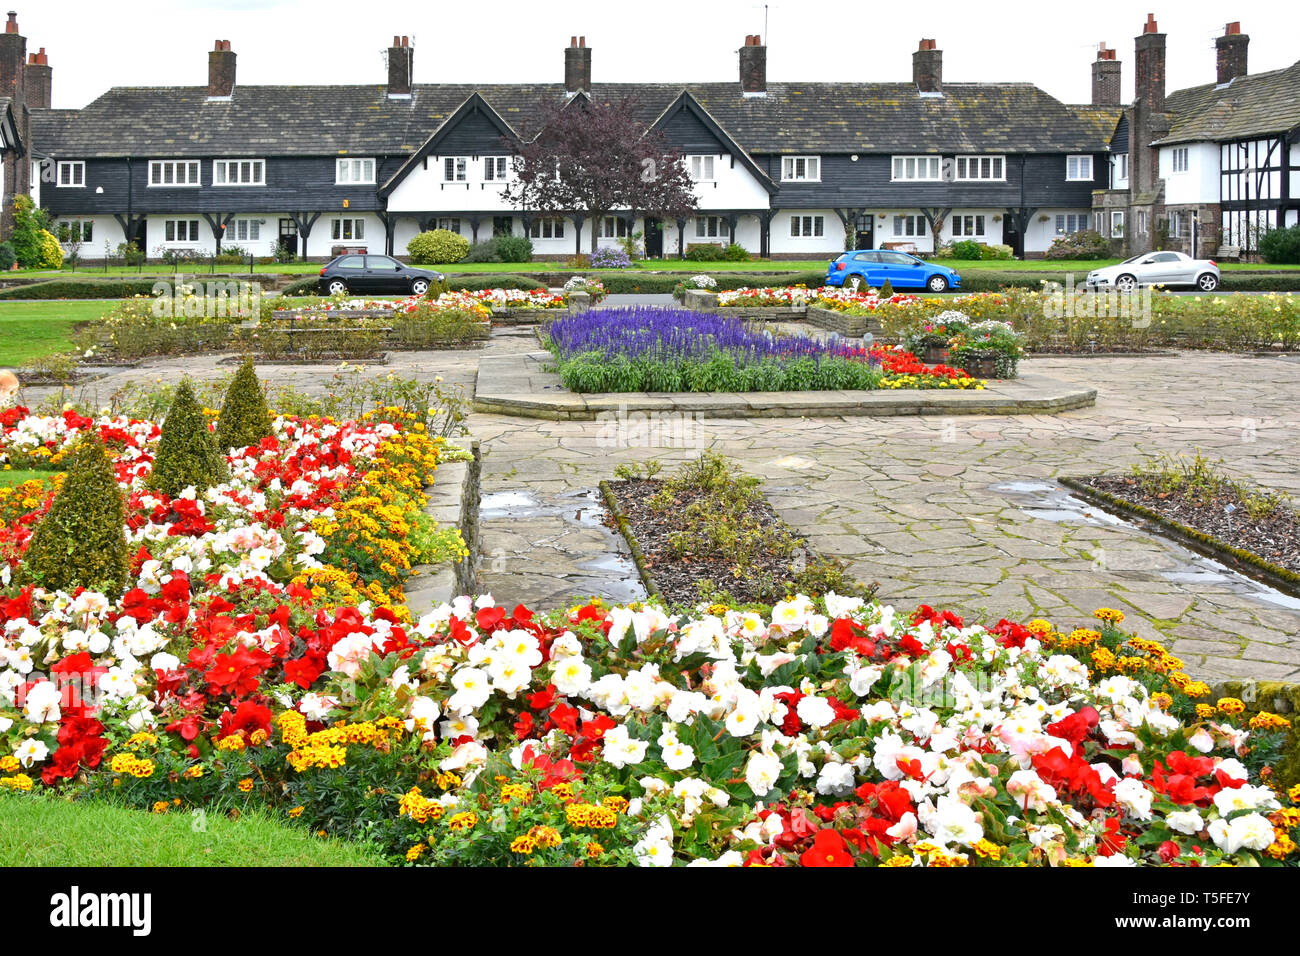 Reihenhäuser in Port Sunlight Modell Dorf Blumen im öffentlichen Garten Alle durch Hebel Brüder für Fabrikarbeiter Wirral Merseyside England England Stockfoto